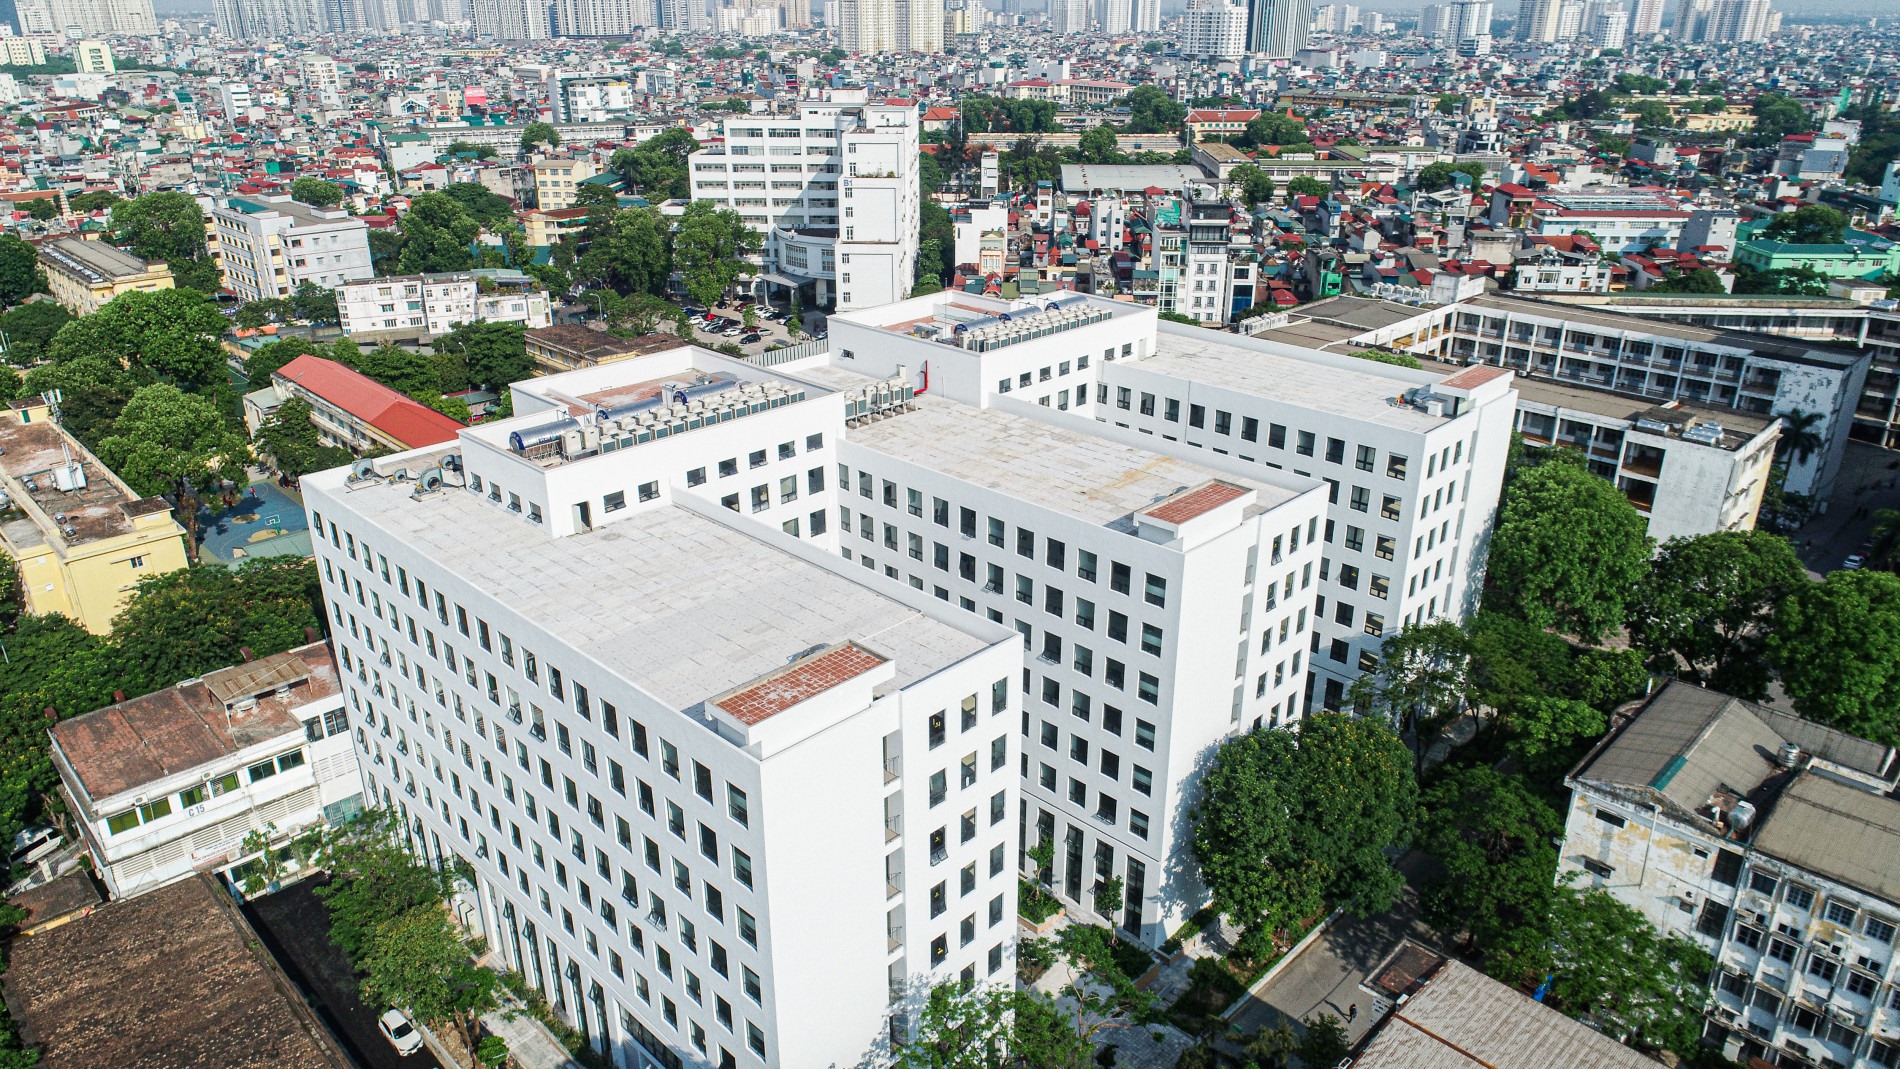 Tòa nhà C7, Đại học Bách khoa Hà Nội nhìn từ trên cao. Ảnh: Trung Dũng